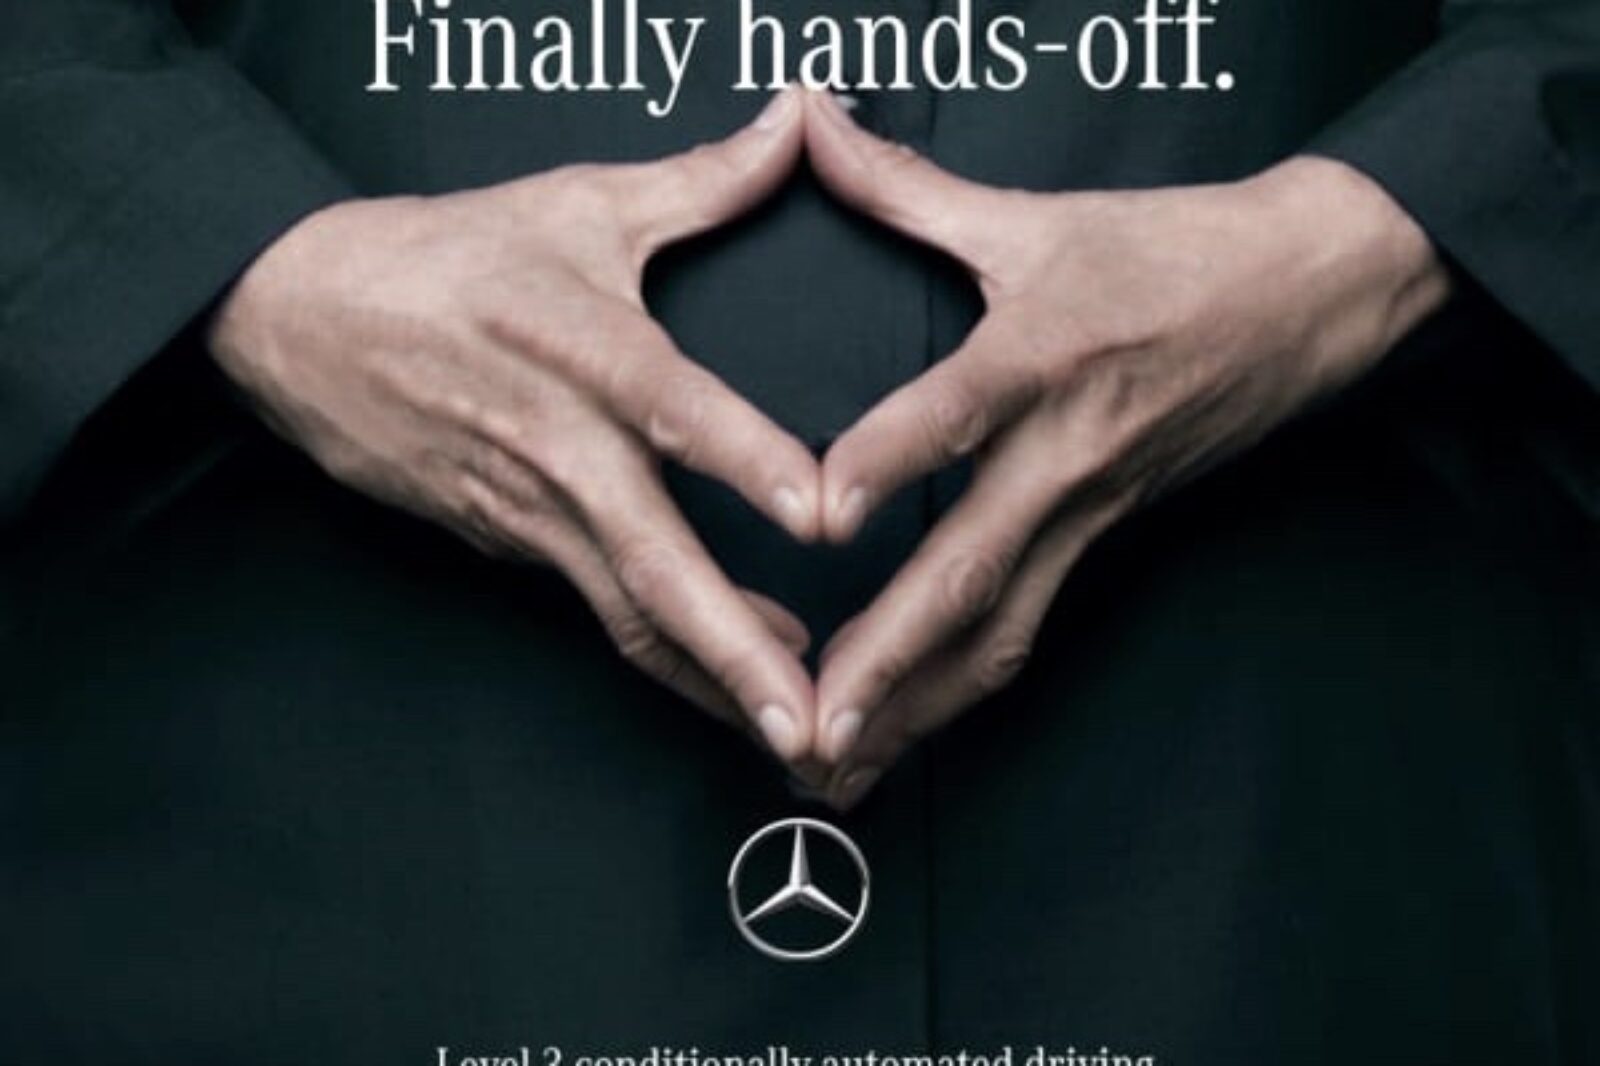 Mercedes Benz Campaign